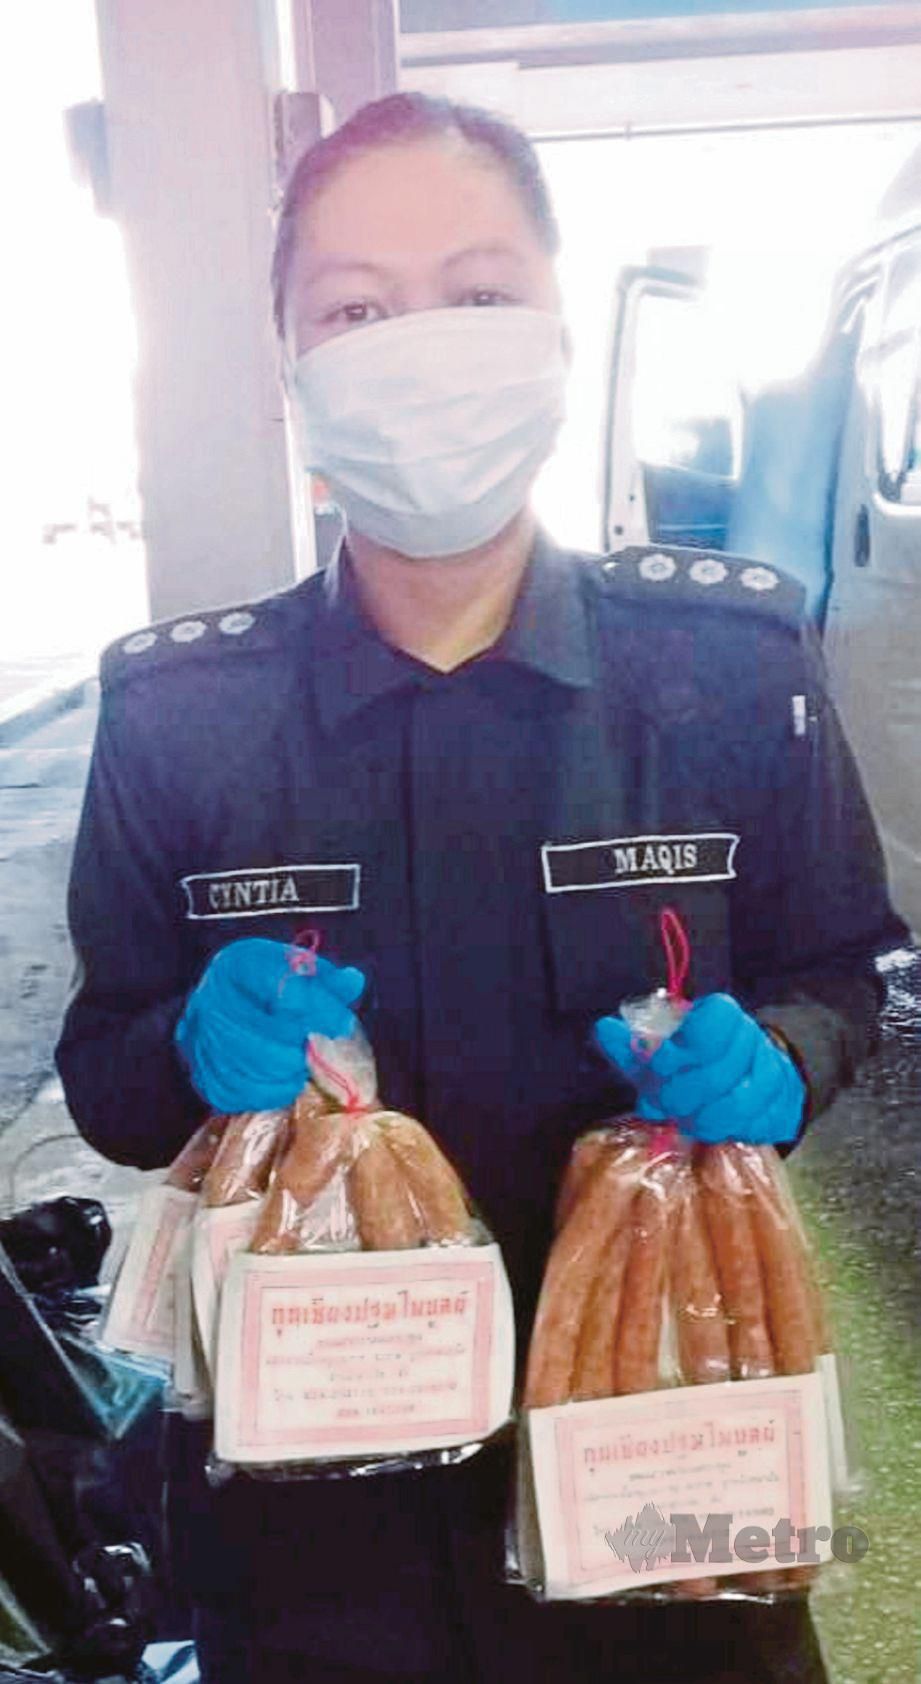 PEGAWAI Maqis Kelantan menunjukkan sebahagian produk daging babi yang dirampas.